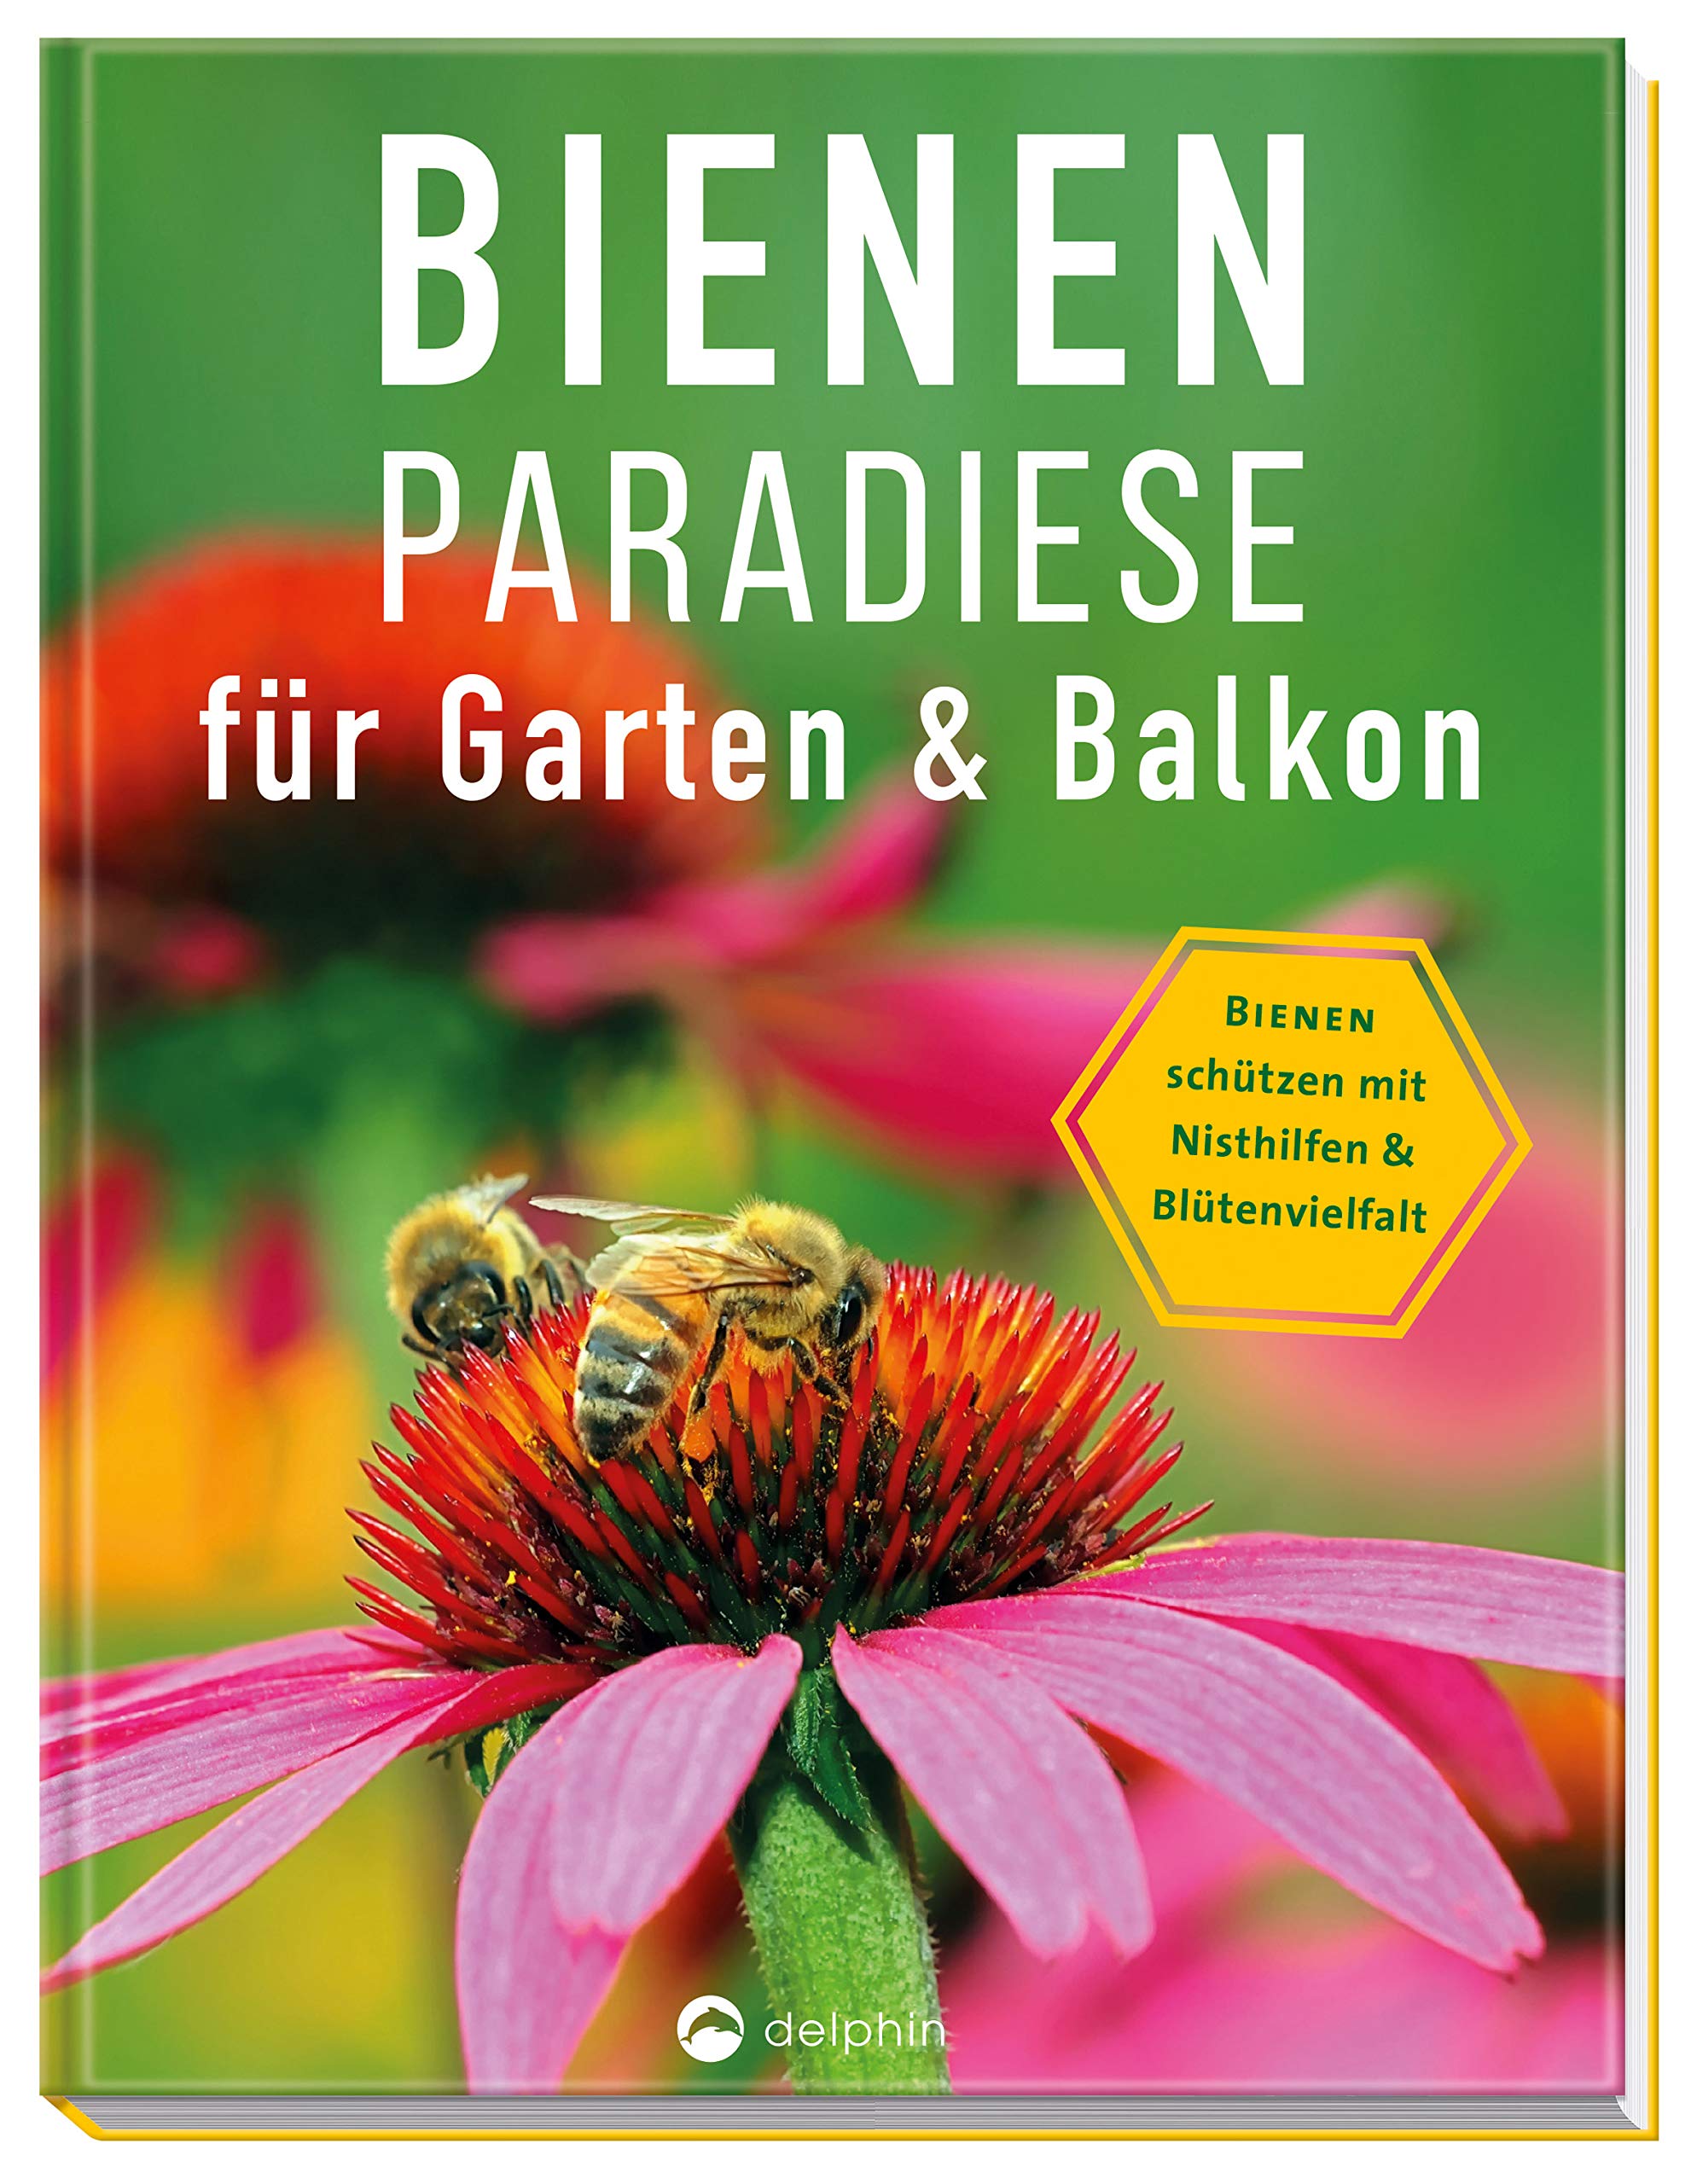 Bienen Im Garten Einzigartig Bienenpara Se Für Garten & Balkon Bienen Schützen Mit